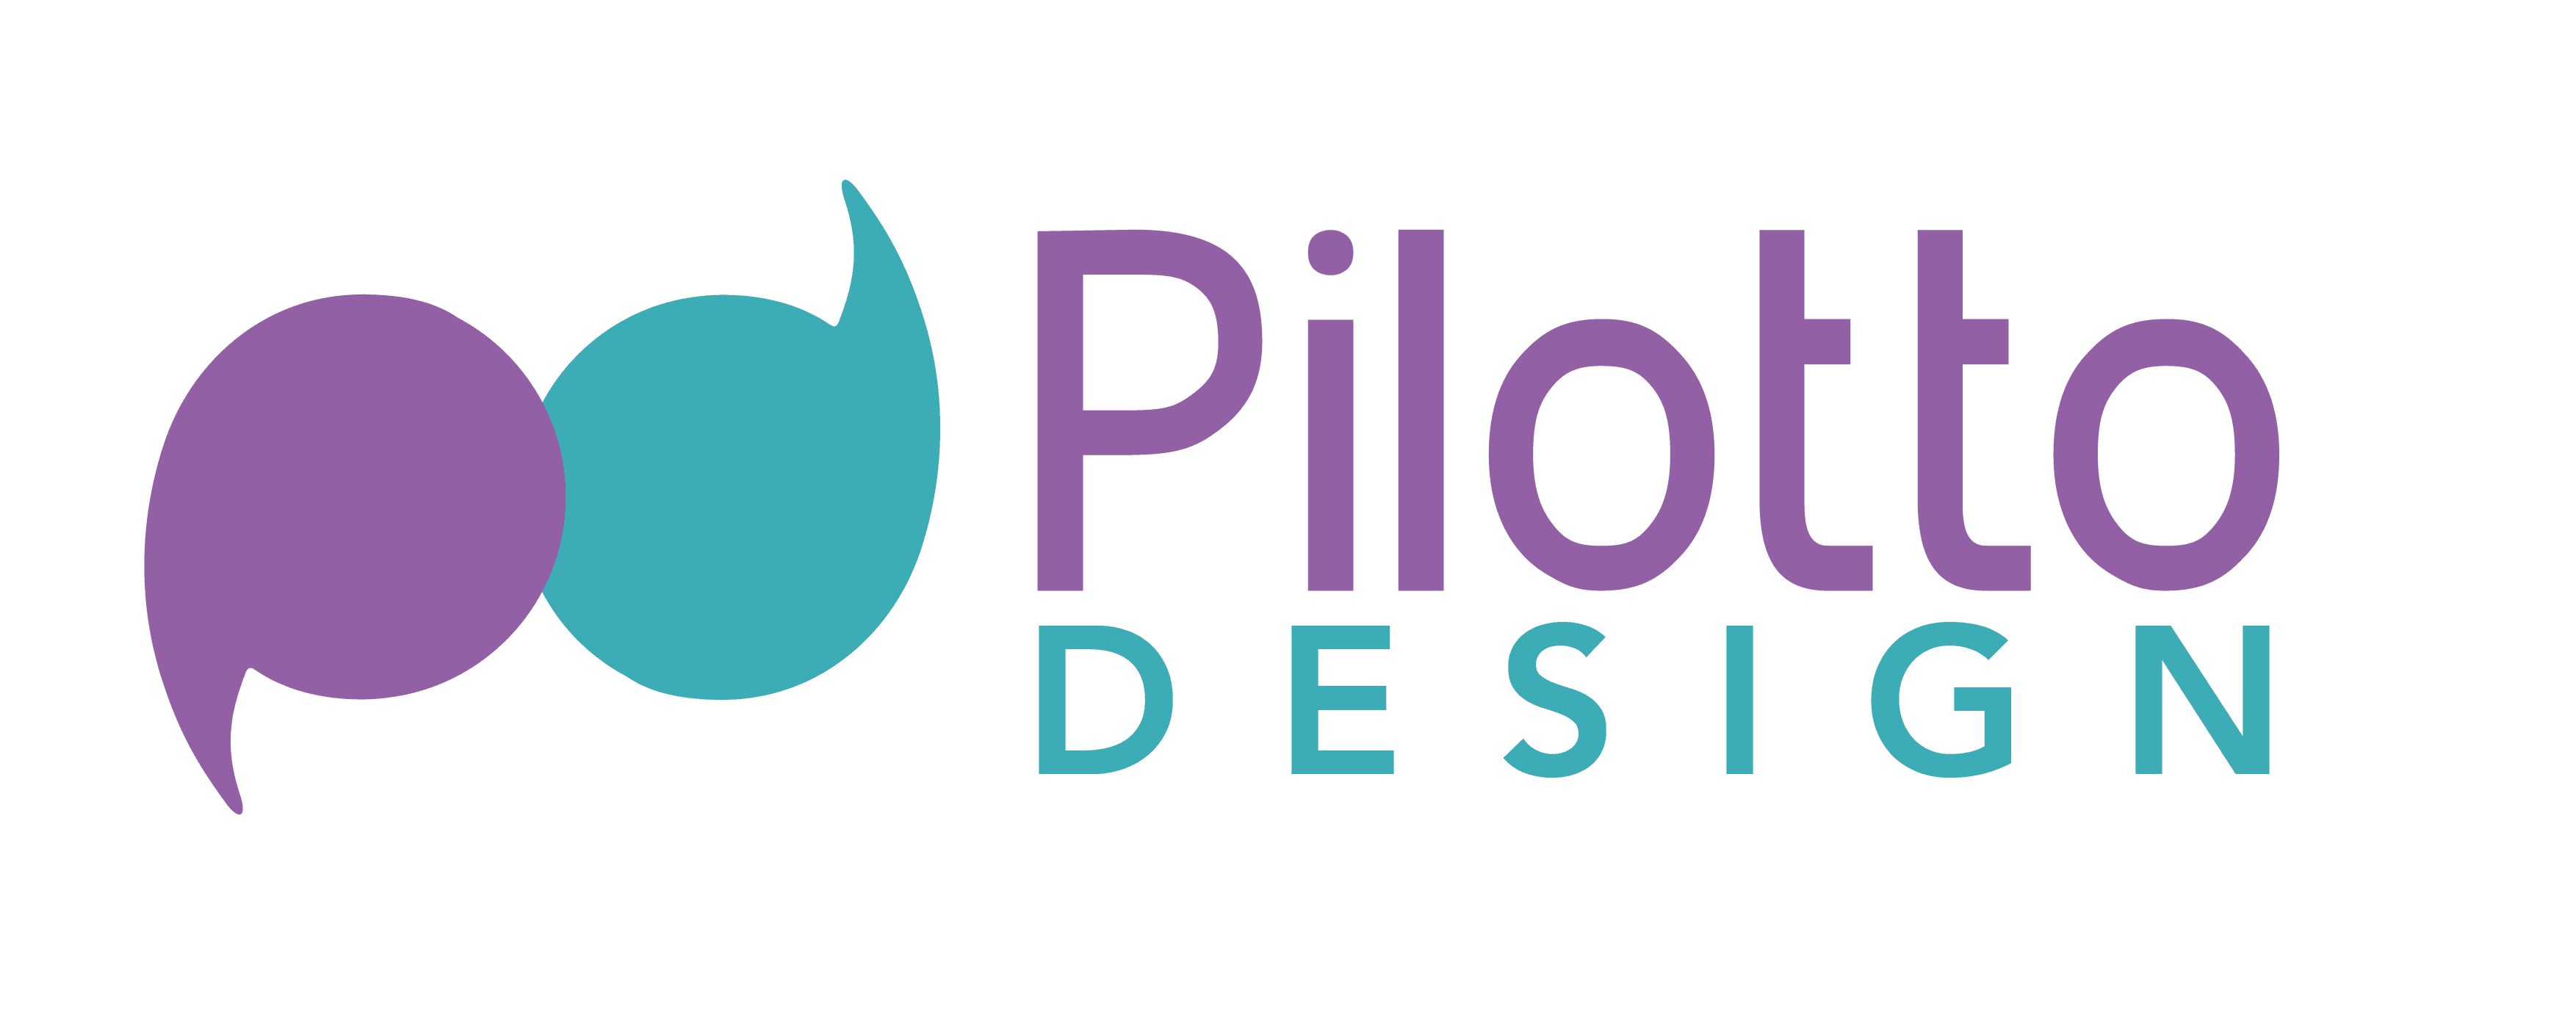 Pilotto Design